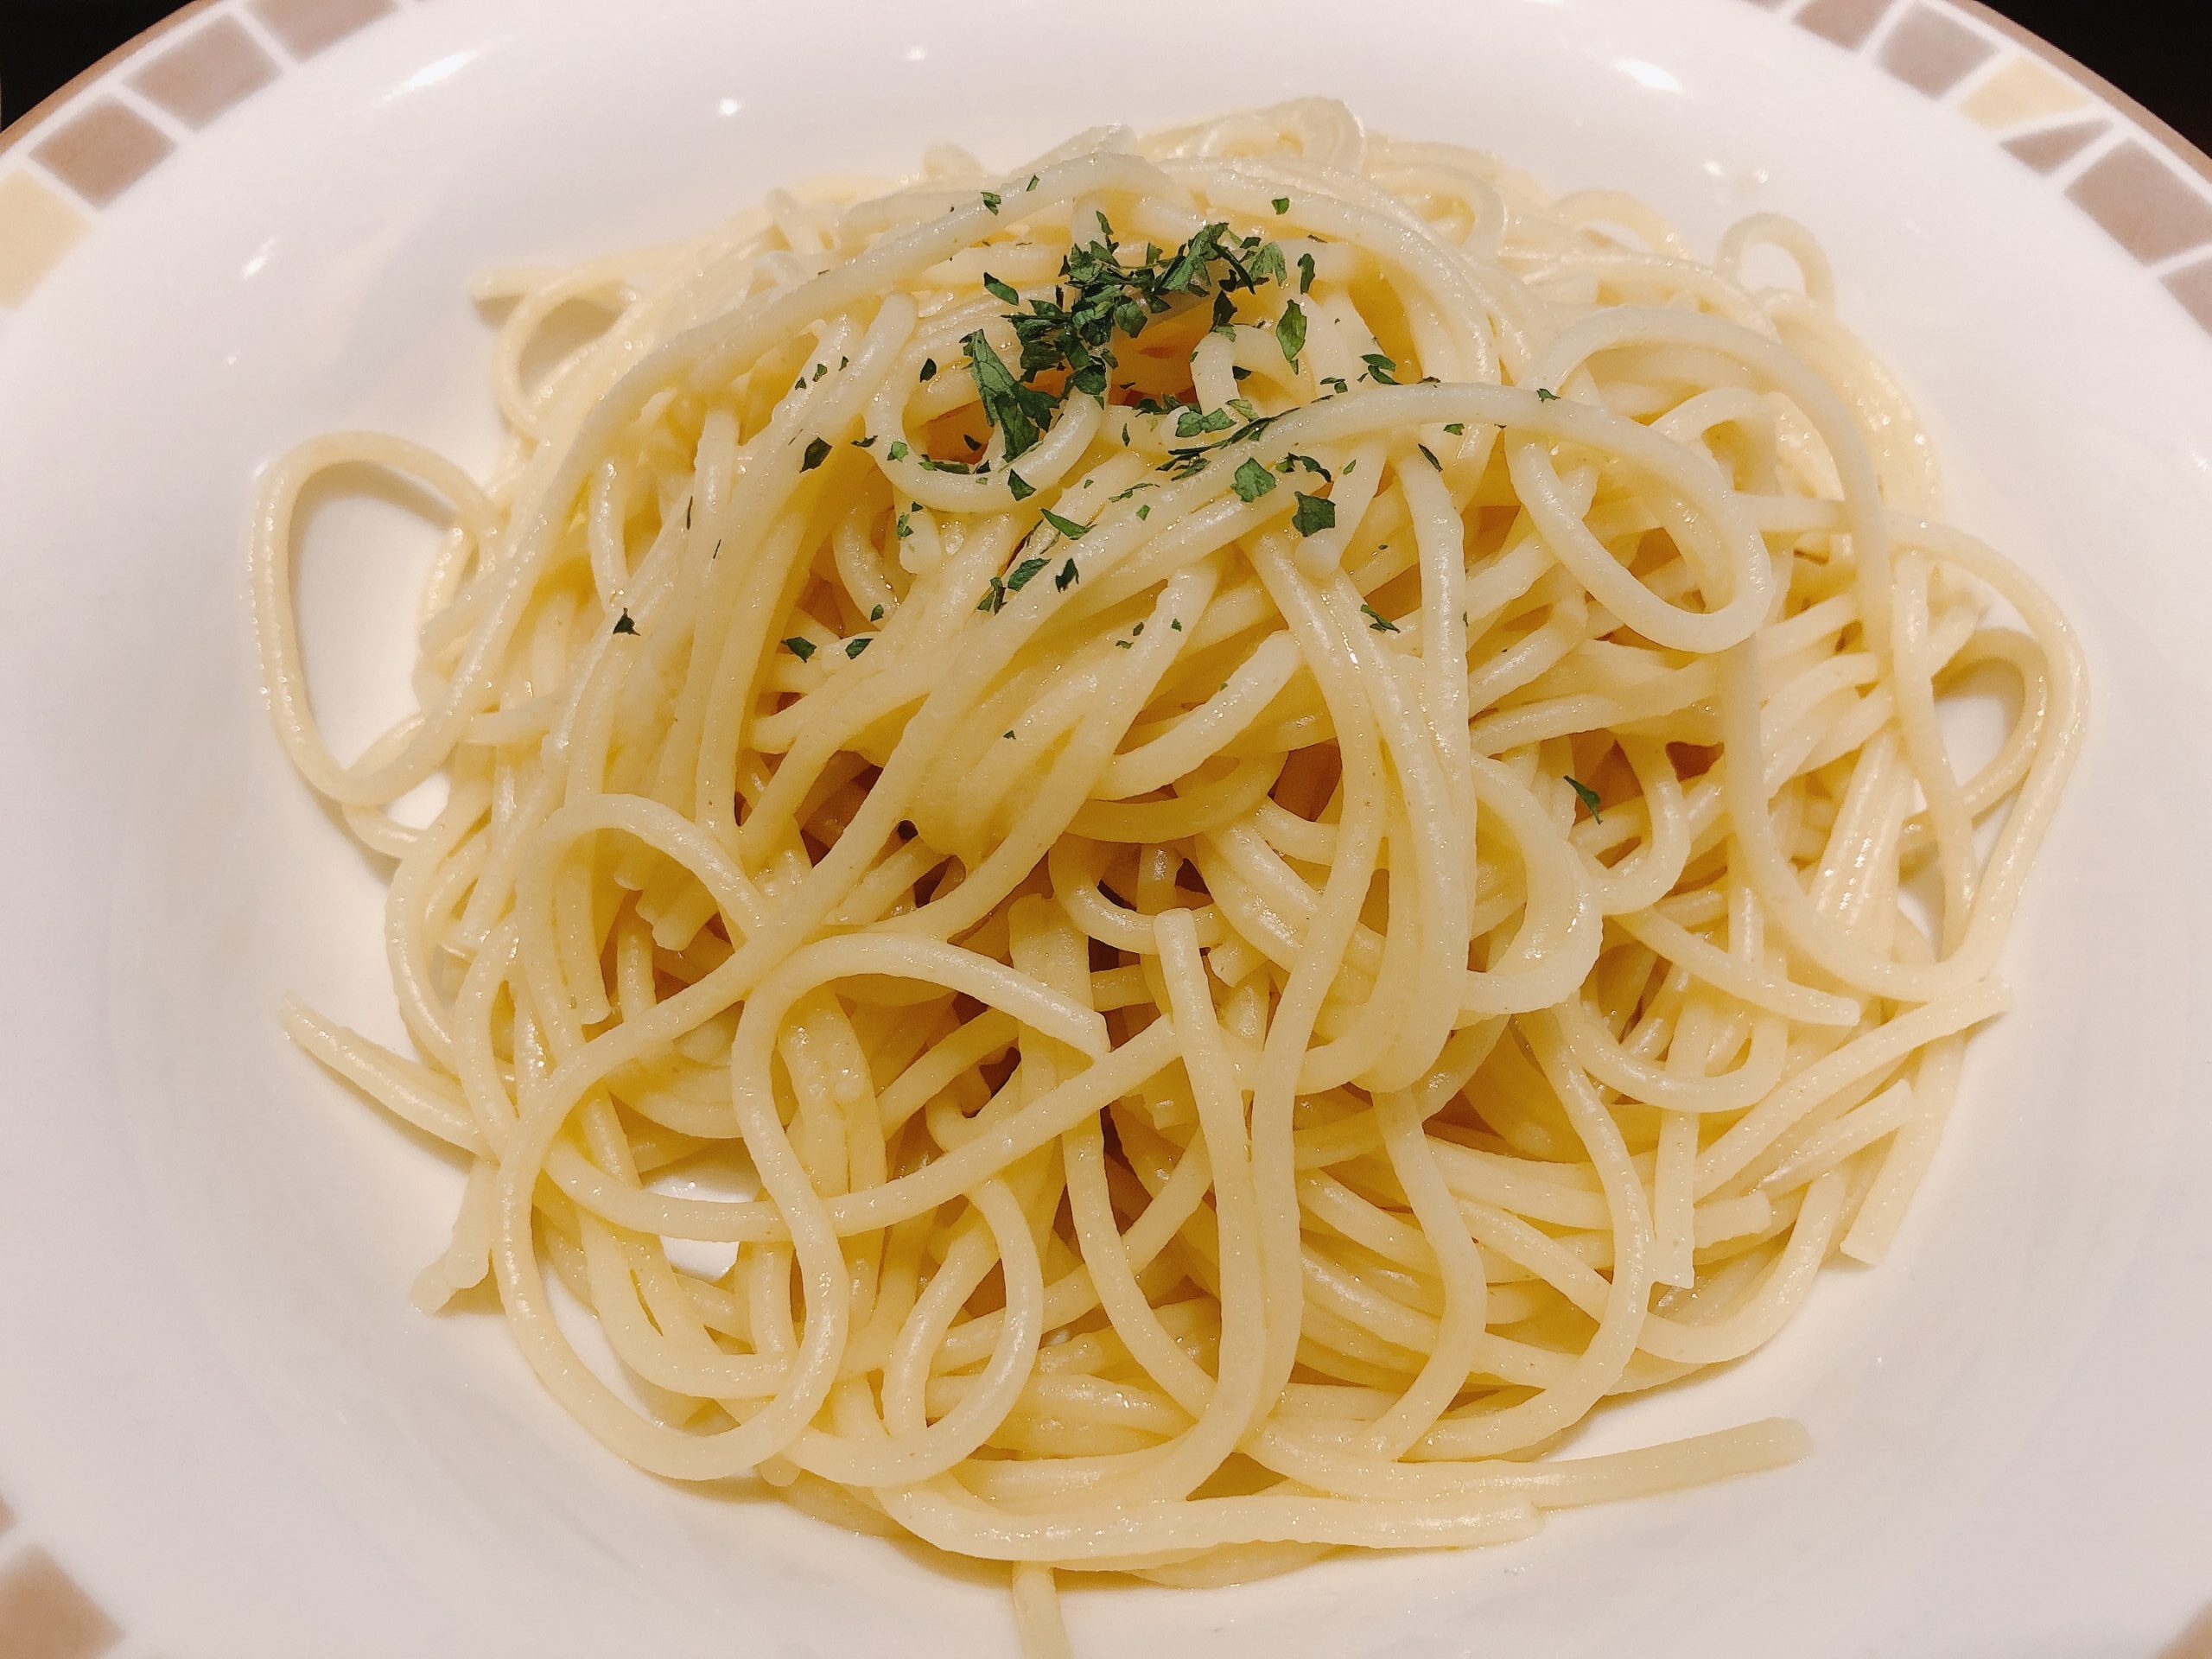 イタリアの白ご飯 サイゼリヤ アーリオ オーリオ を食べてみた 価格 カロリー レシピ情報なども サイゼリヤの歩き方